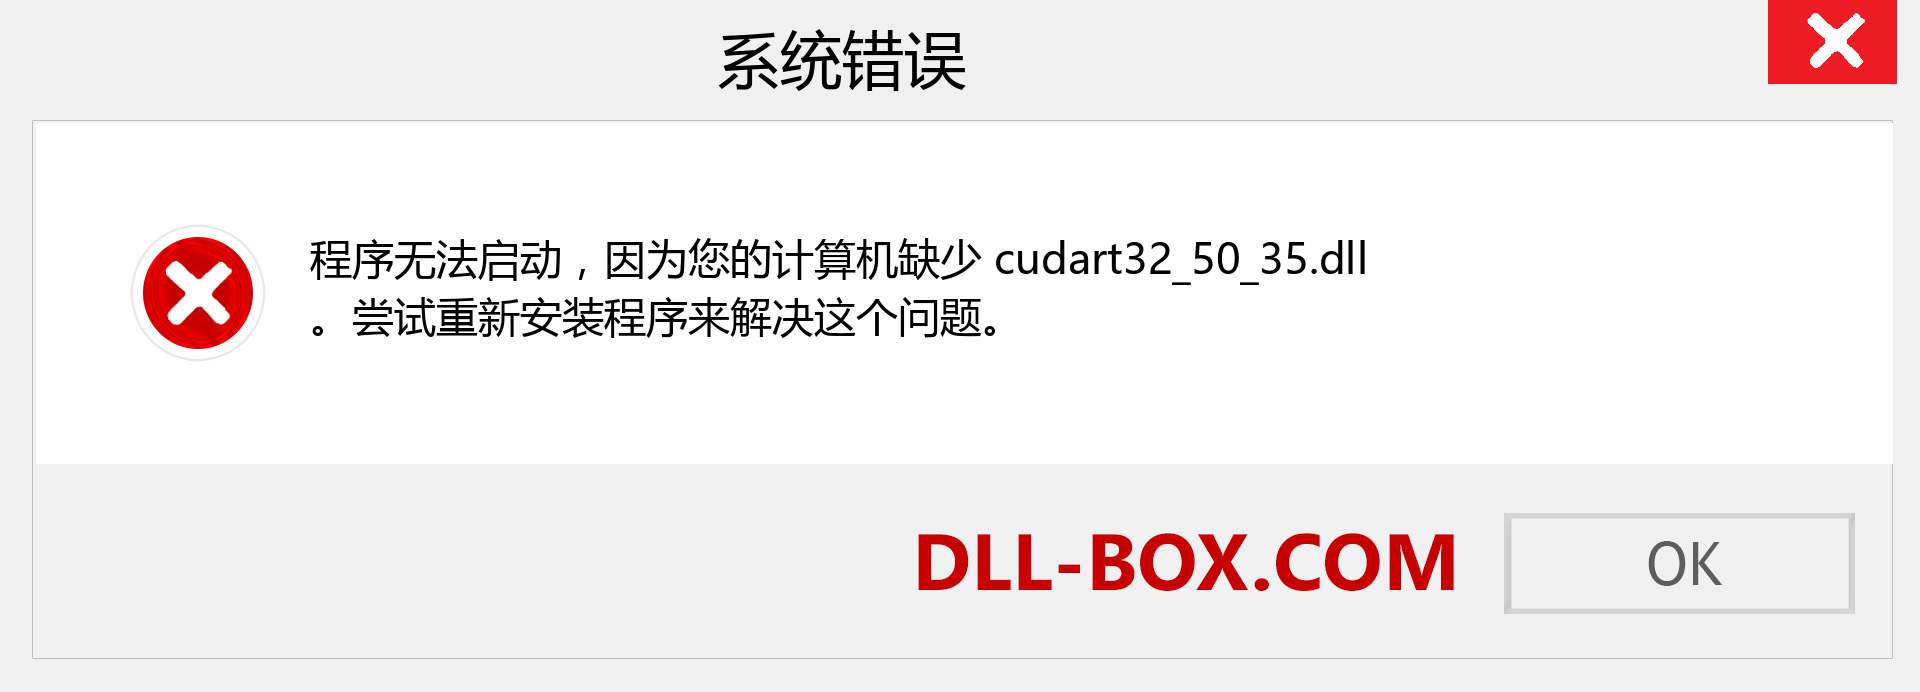 cudart32_50_35.dll 文件丢失？。 适用于 Windows 7、8、10 的下载 - 修复 Windows、照片、图像上的 cudart32_50_35 dll 丢失错误